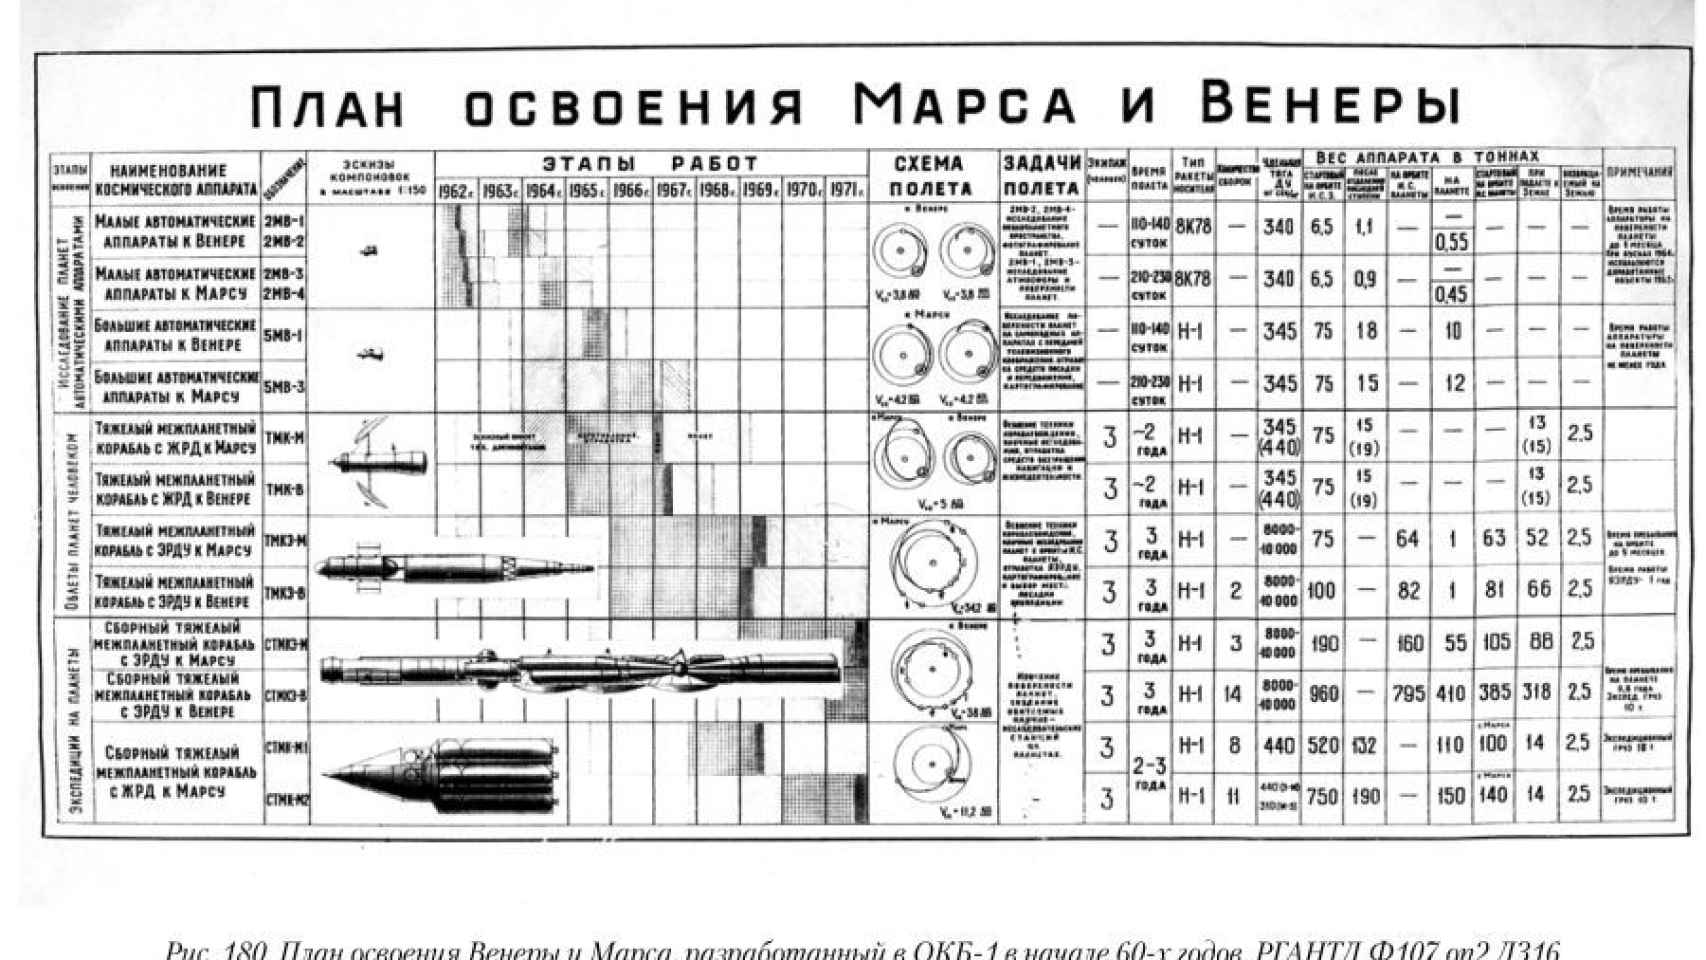 Plan soviético de conquista de Marte y Venus, 1960.